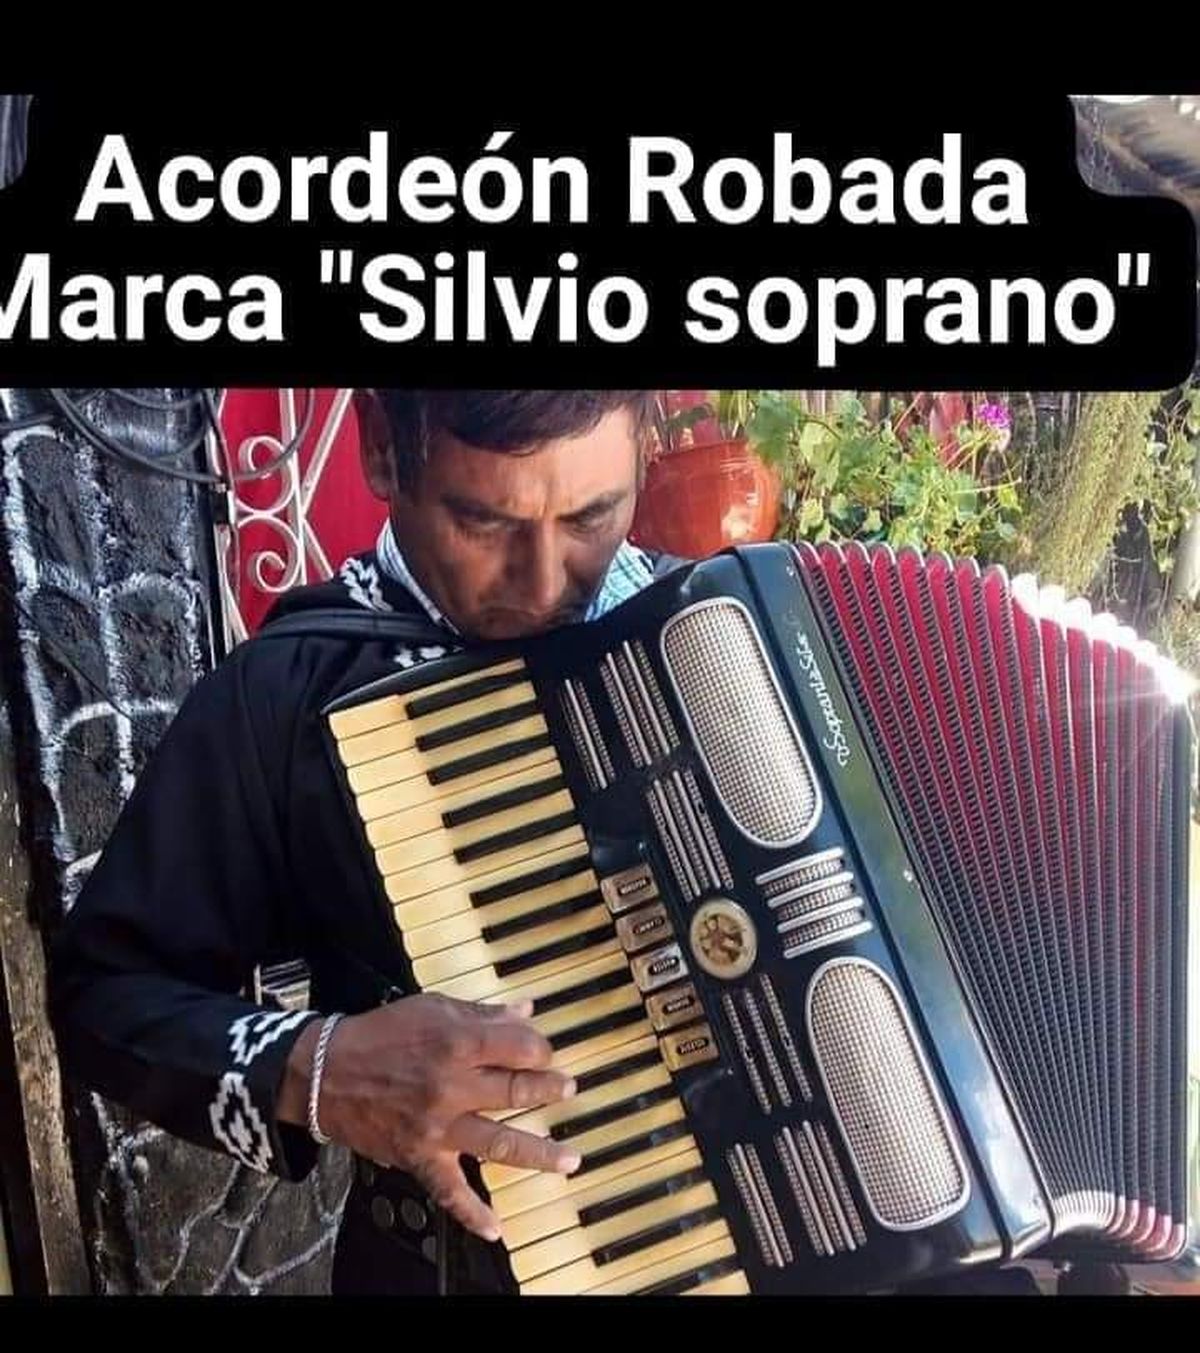 El acordeón que pertenecía a Amadeo, robado en Burzaco